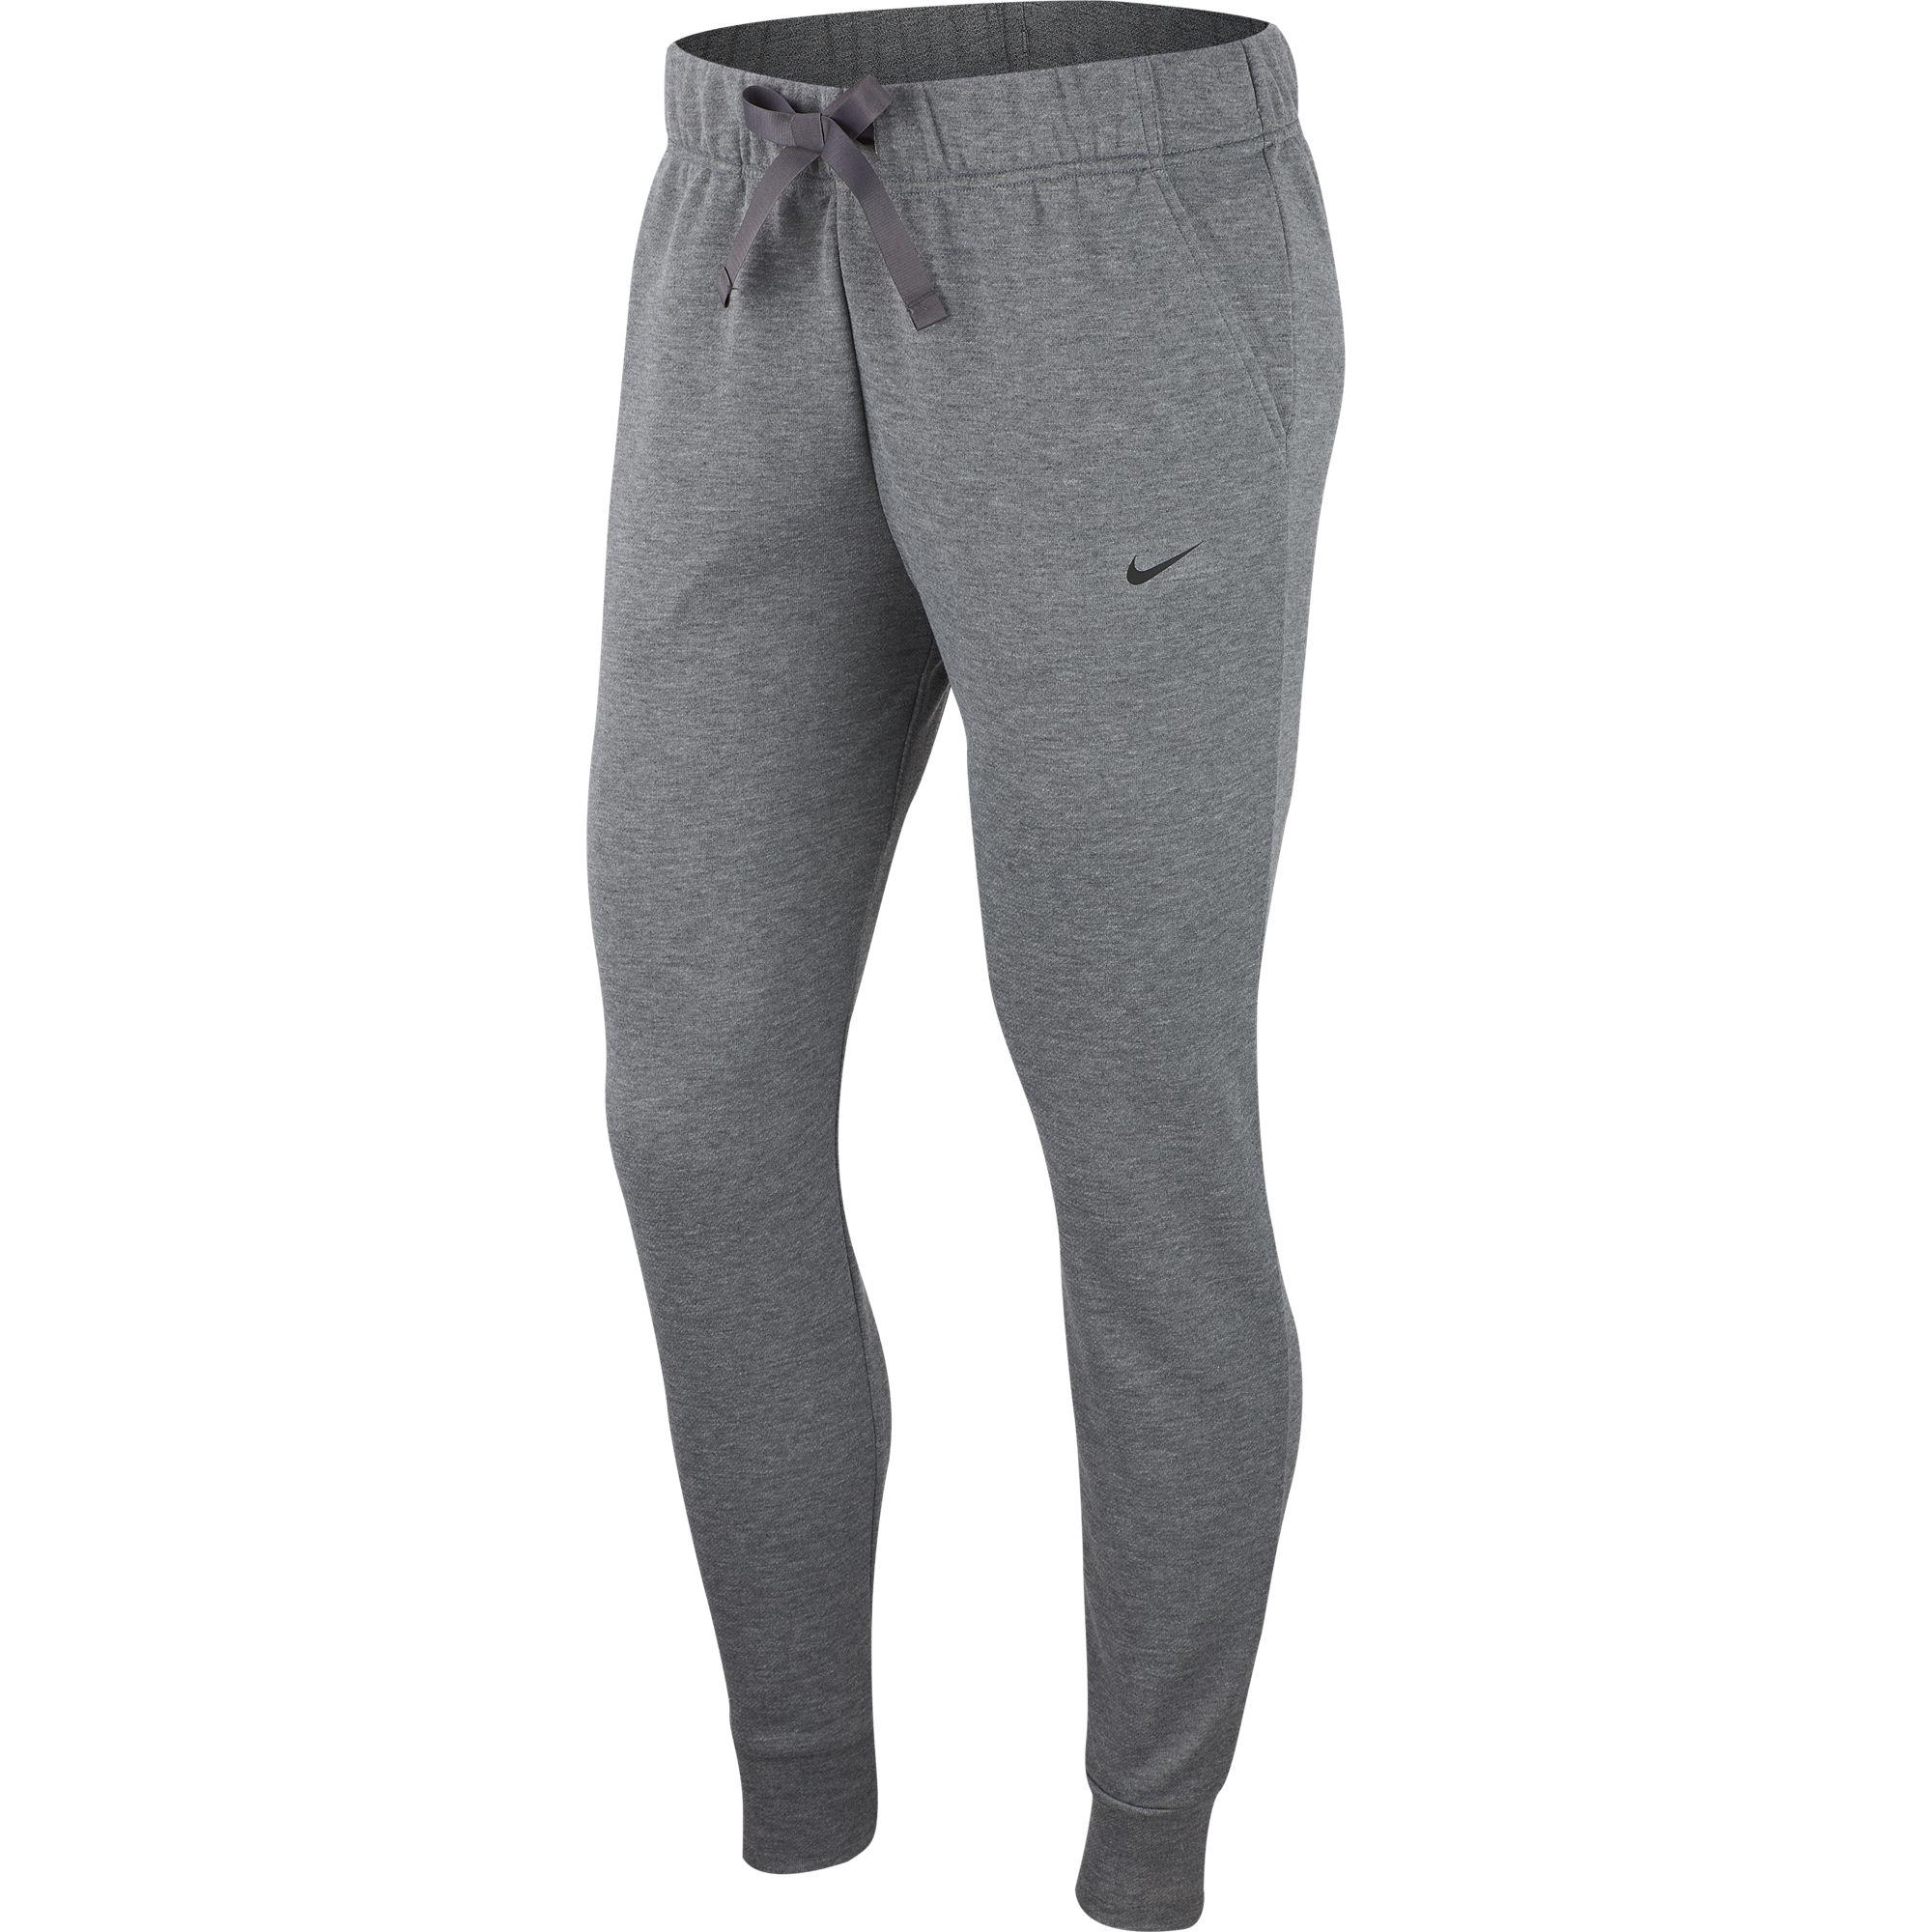 Nike Womens Dri-FIT Get Fit Trousers - Grey - Tennisnuts.com